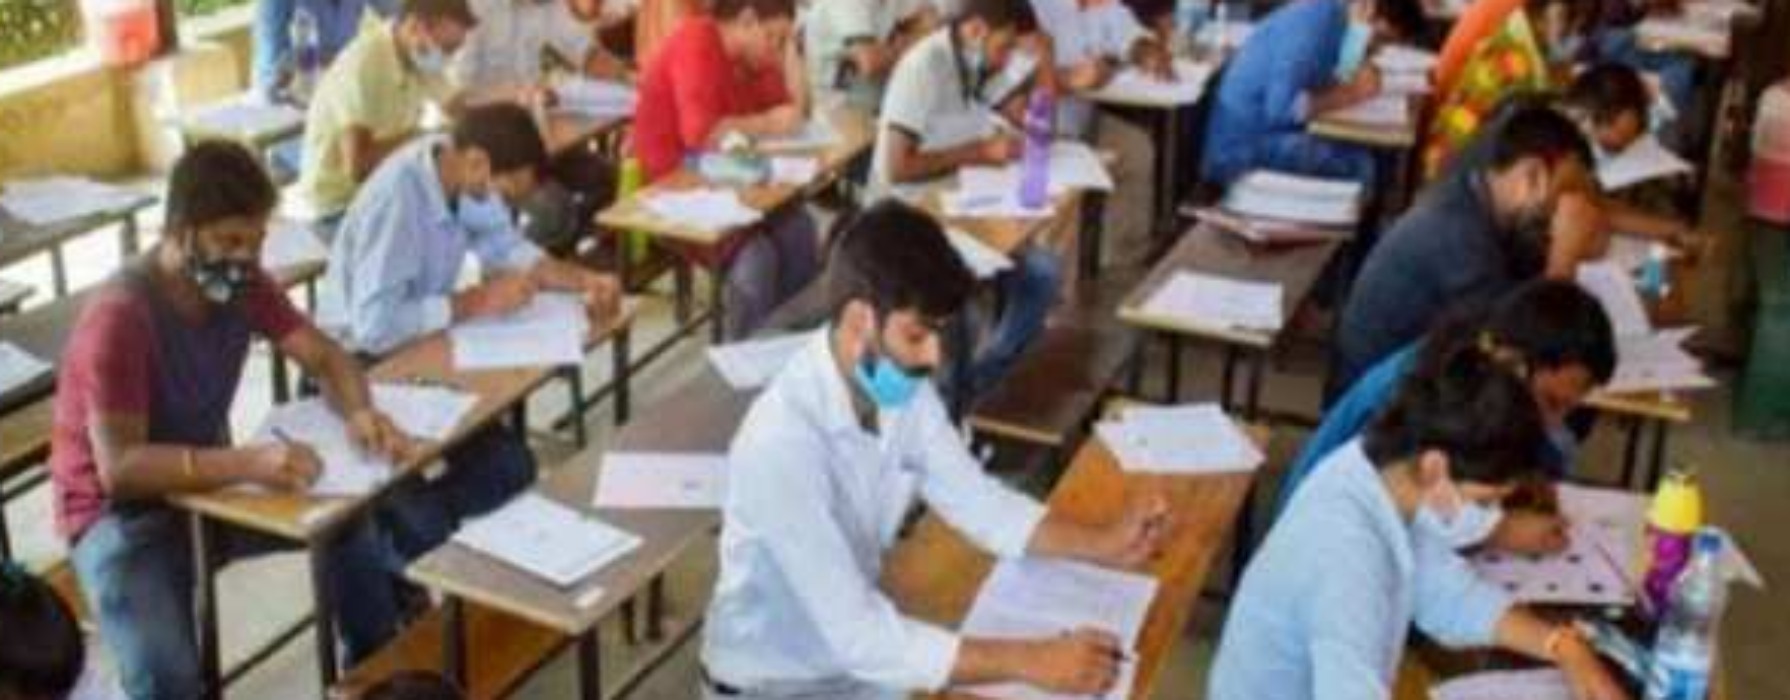 UP TET Exam 2021 : बारिश पर भारी अभ्यर्थियोंं का उत्साह, कड़ी सुरक्षा में शुरू हुई TET परीक्षा